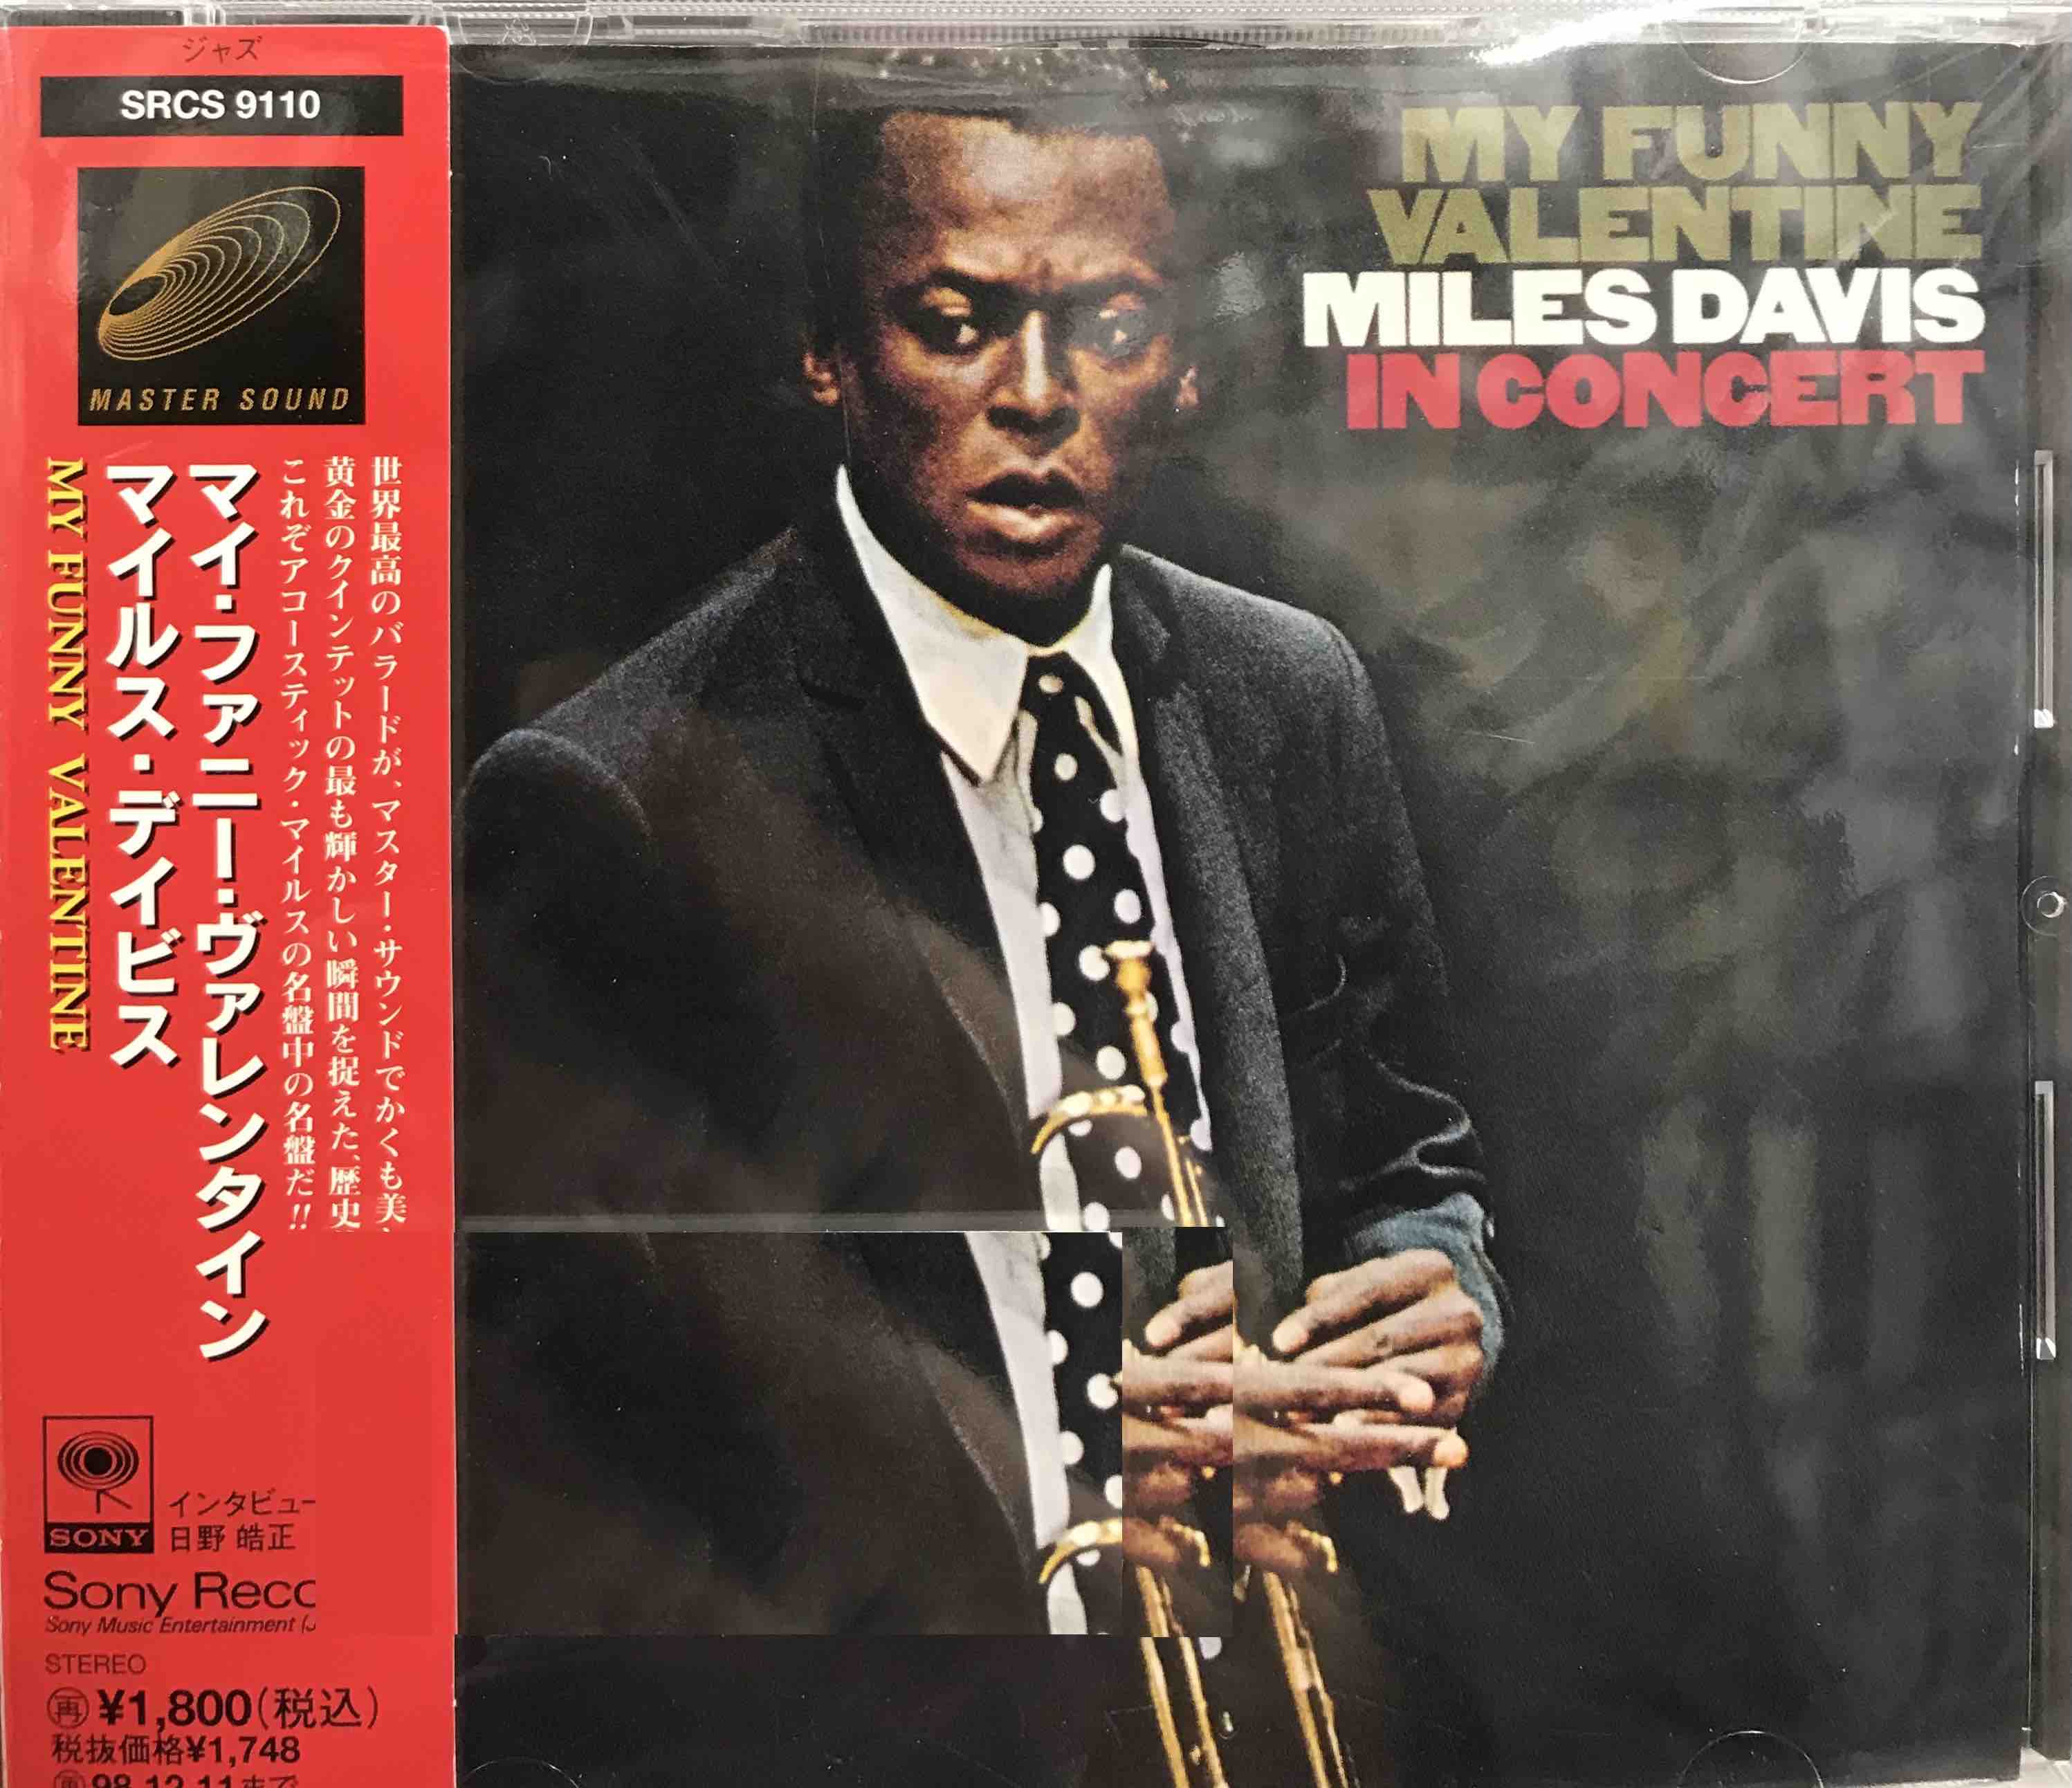 Miles Davis ‎– My Funny Valentine - Miles Davis In Concert     (Pre-owned)